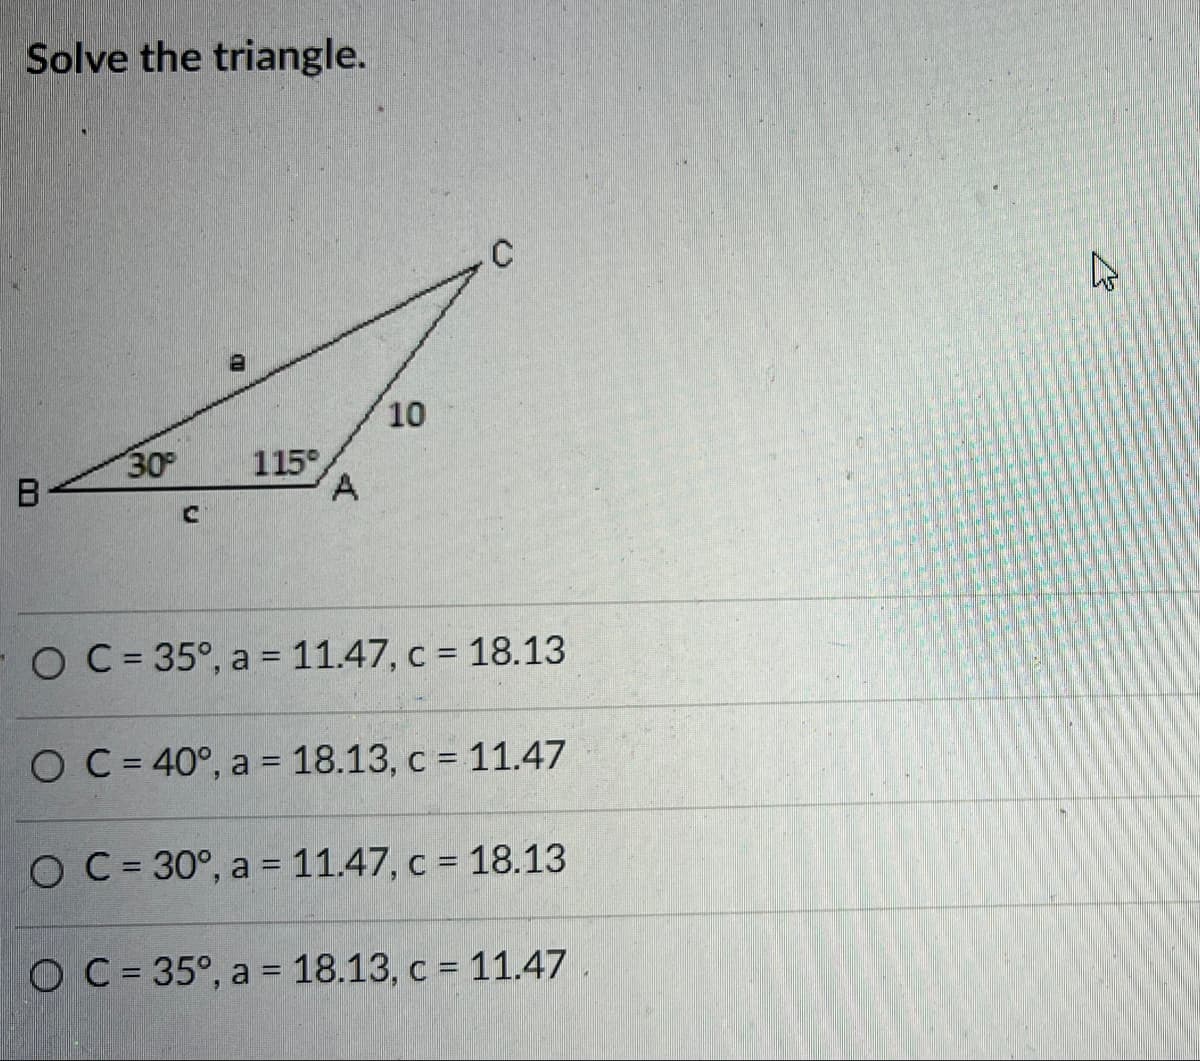 Solve the triangle.
10
30
115°
A.
B
FO C= 35°, a = 11.47, c = 18.13
O C= 40°, a = 18.13, c = 11.47
O C = 30°, a = 11.47, c = 18.13
O C= 35°, a = 18.13, c = 11.47
